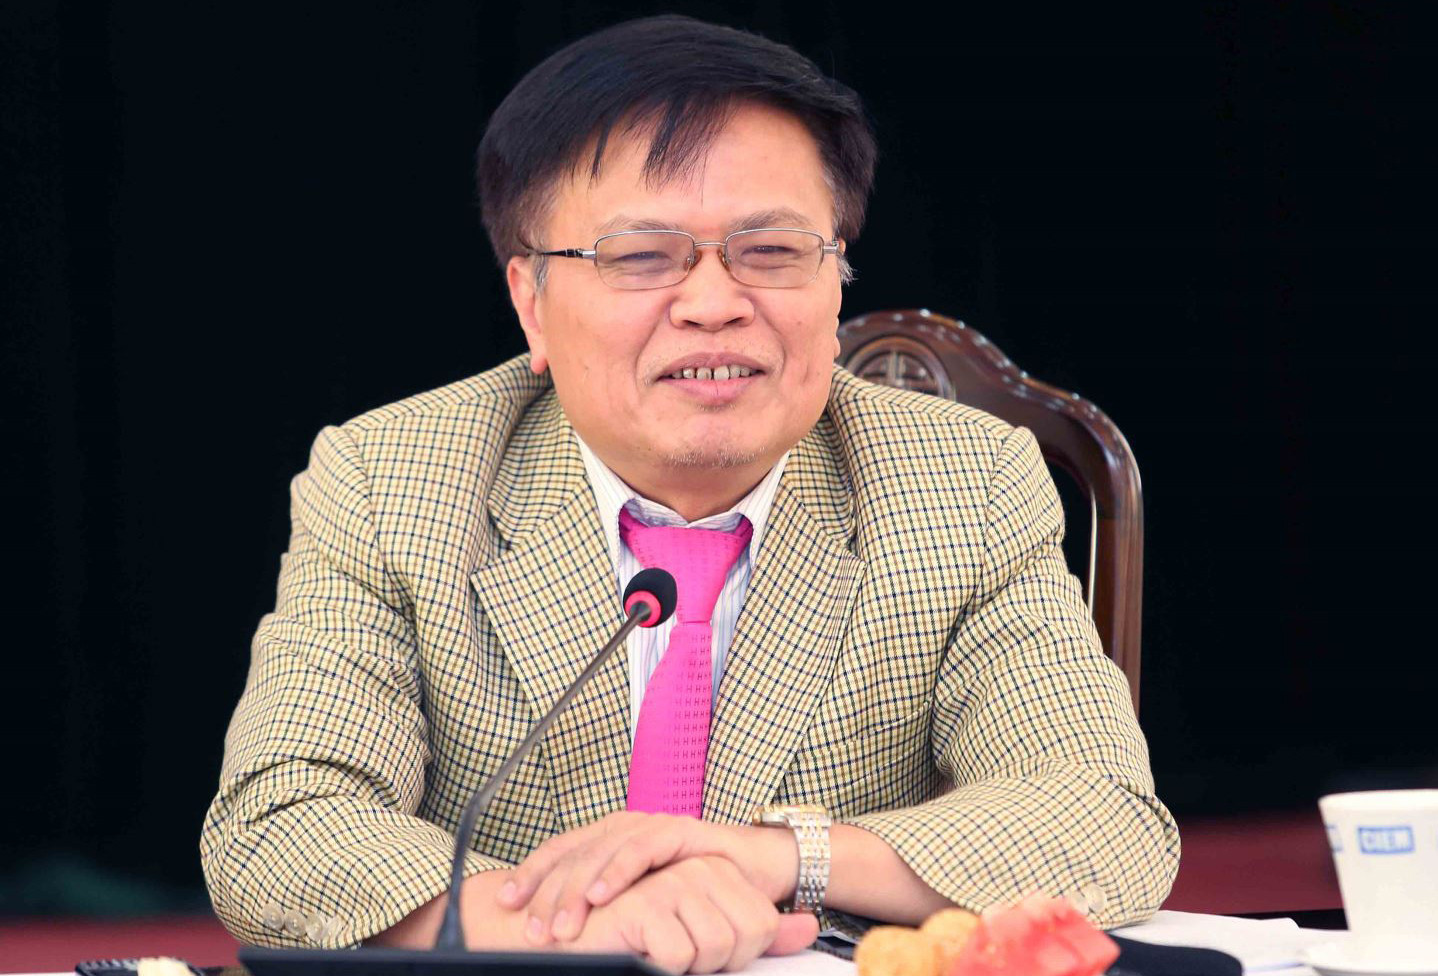 TS Nguyễn Đình Cung: ‘Vốn cho doanh nghiệp đang khô cạn’